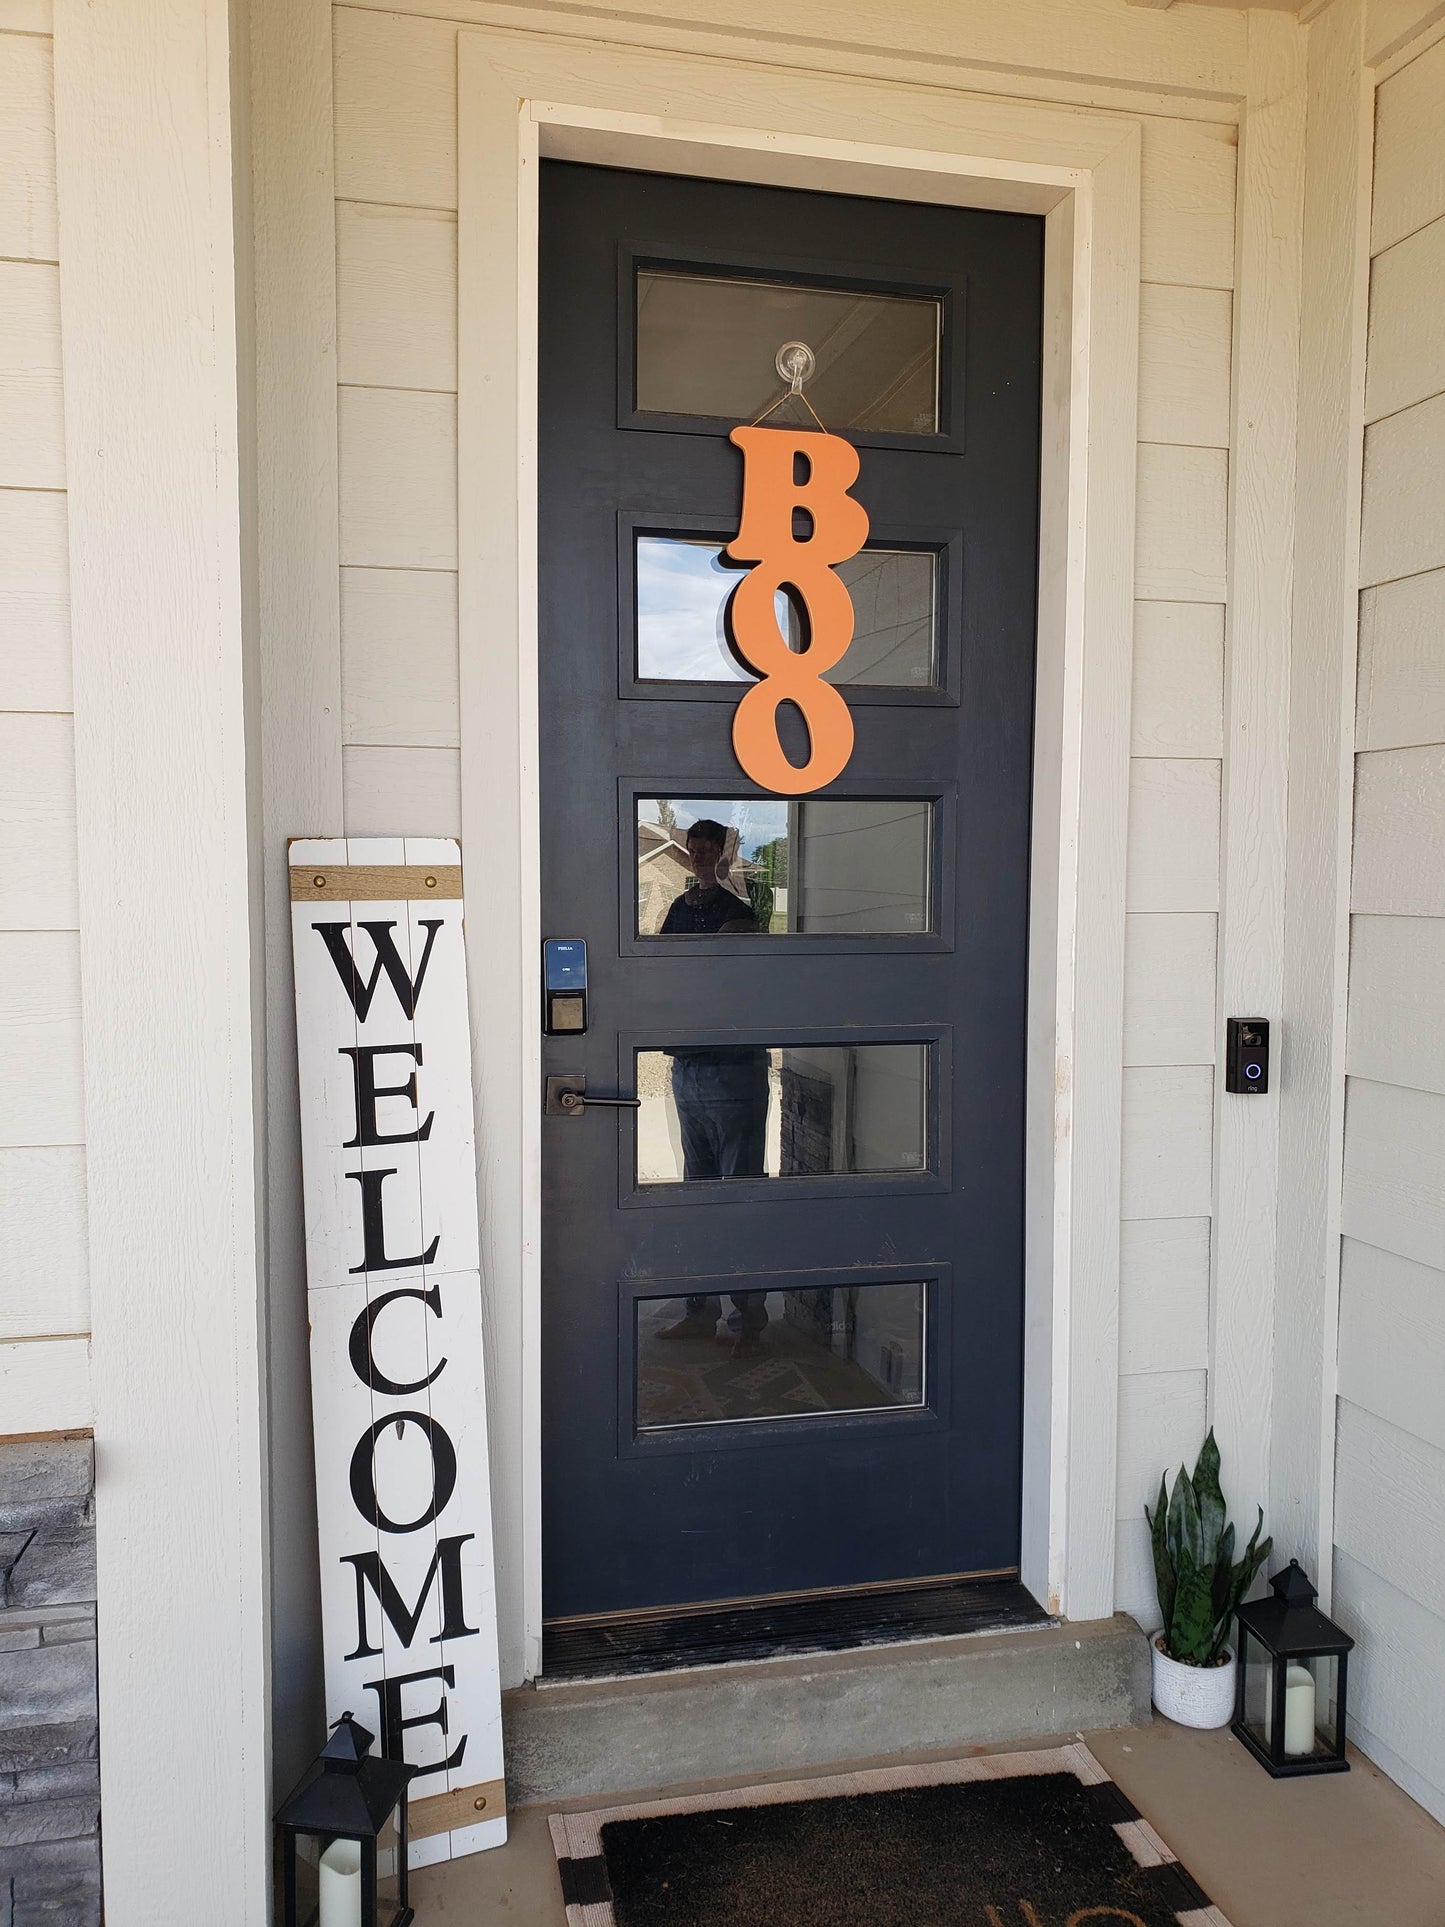 Vertical 'Boo' Halloween Door Sign – Spooky Seasonal Decor in Classic Colors